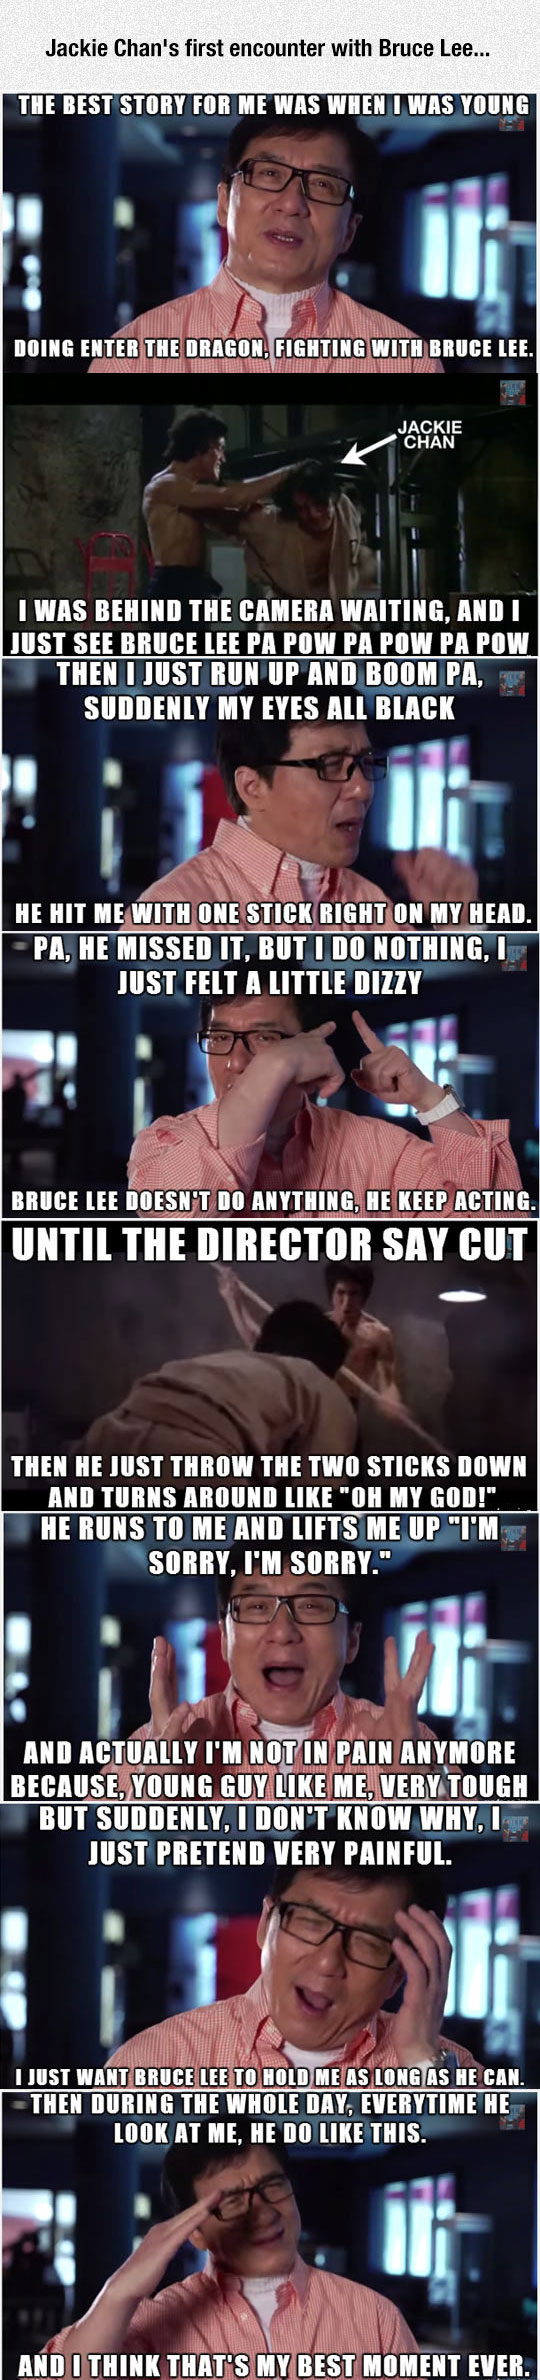 Jackie Chan meets Bruce Lee